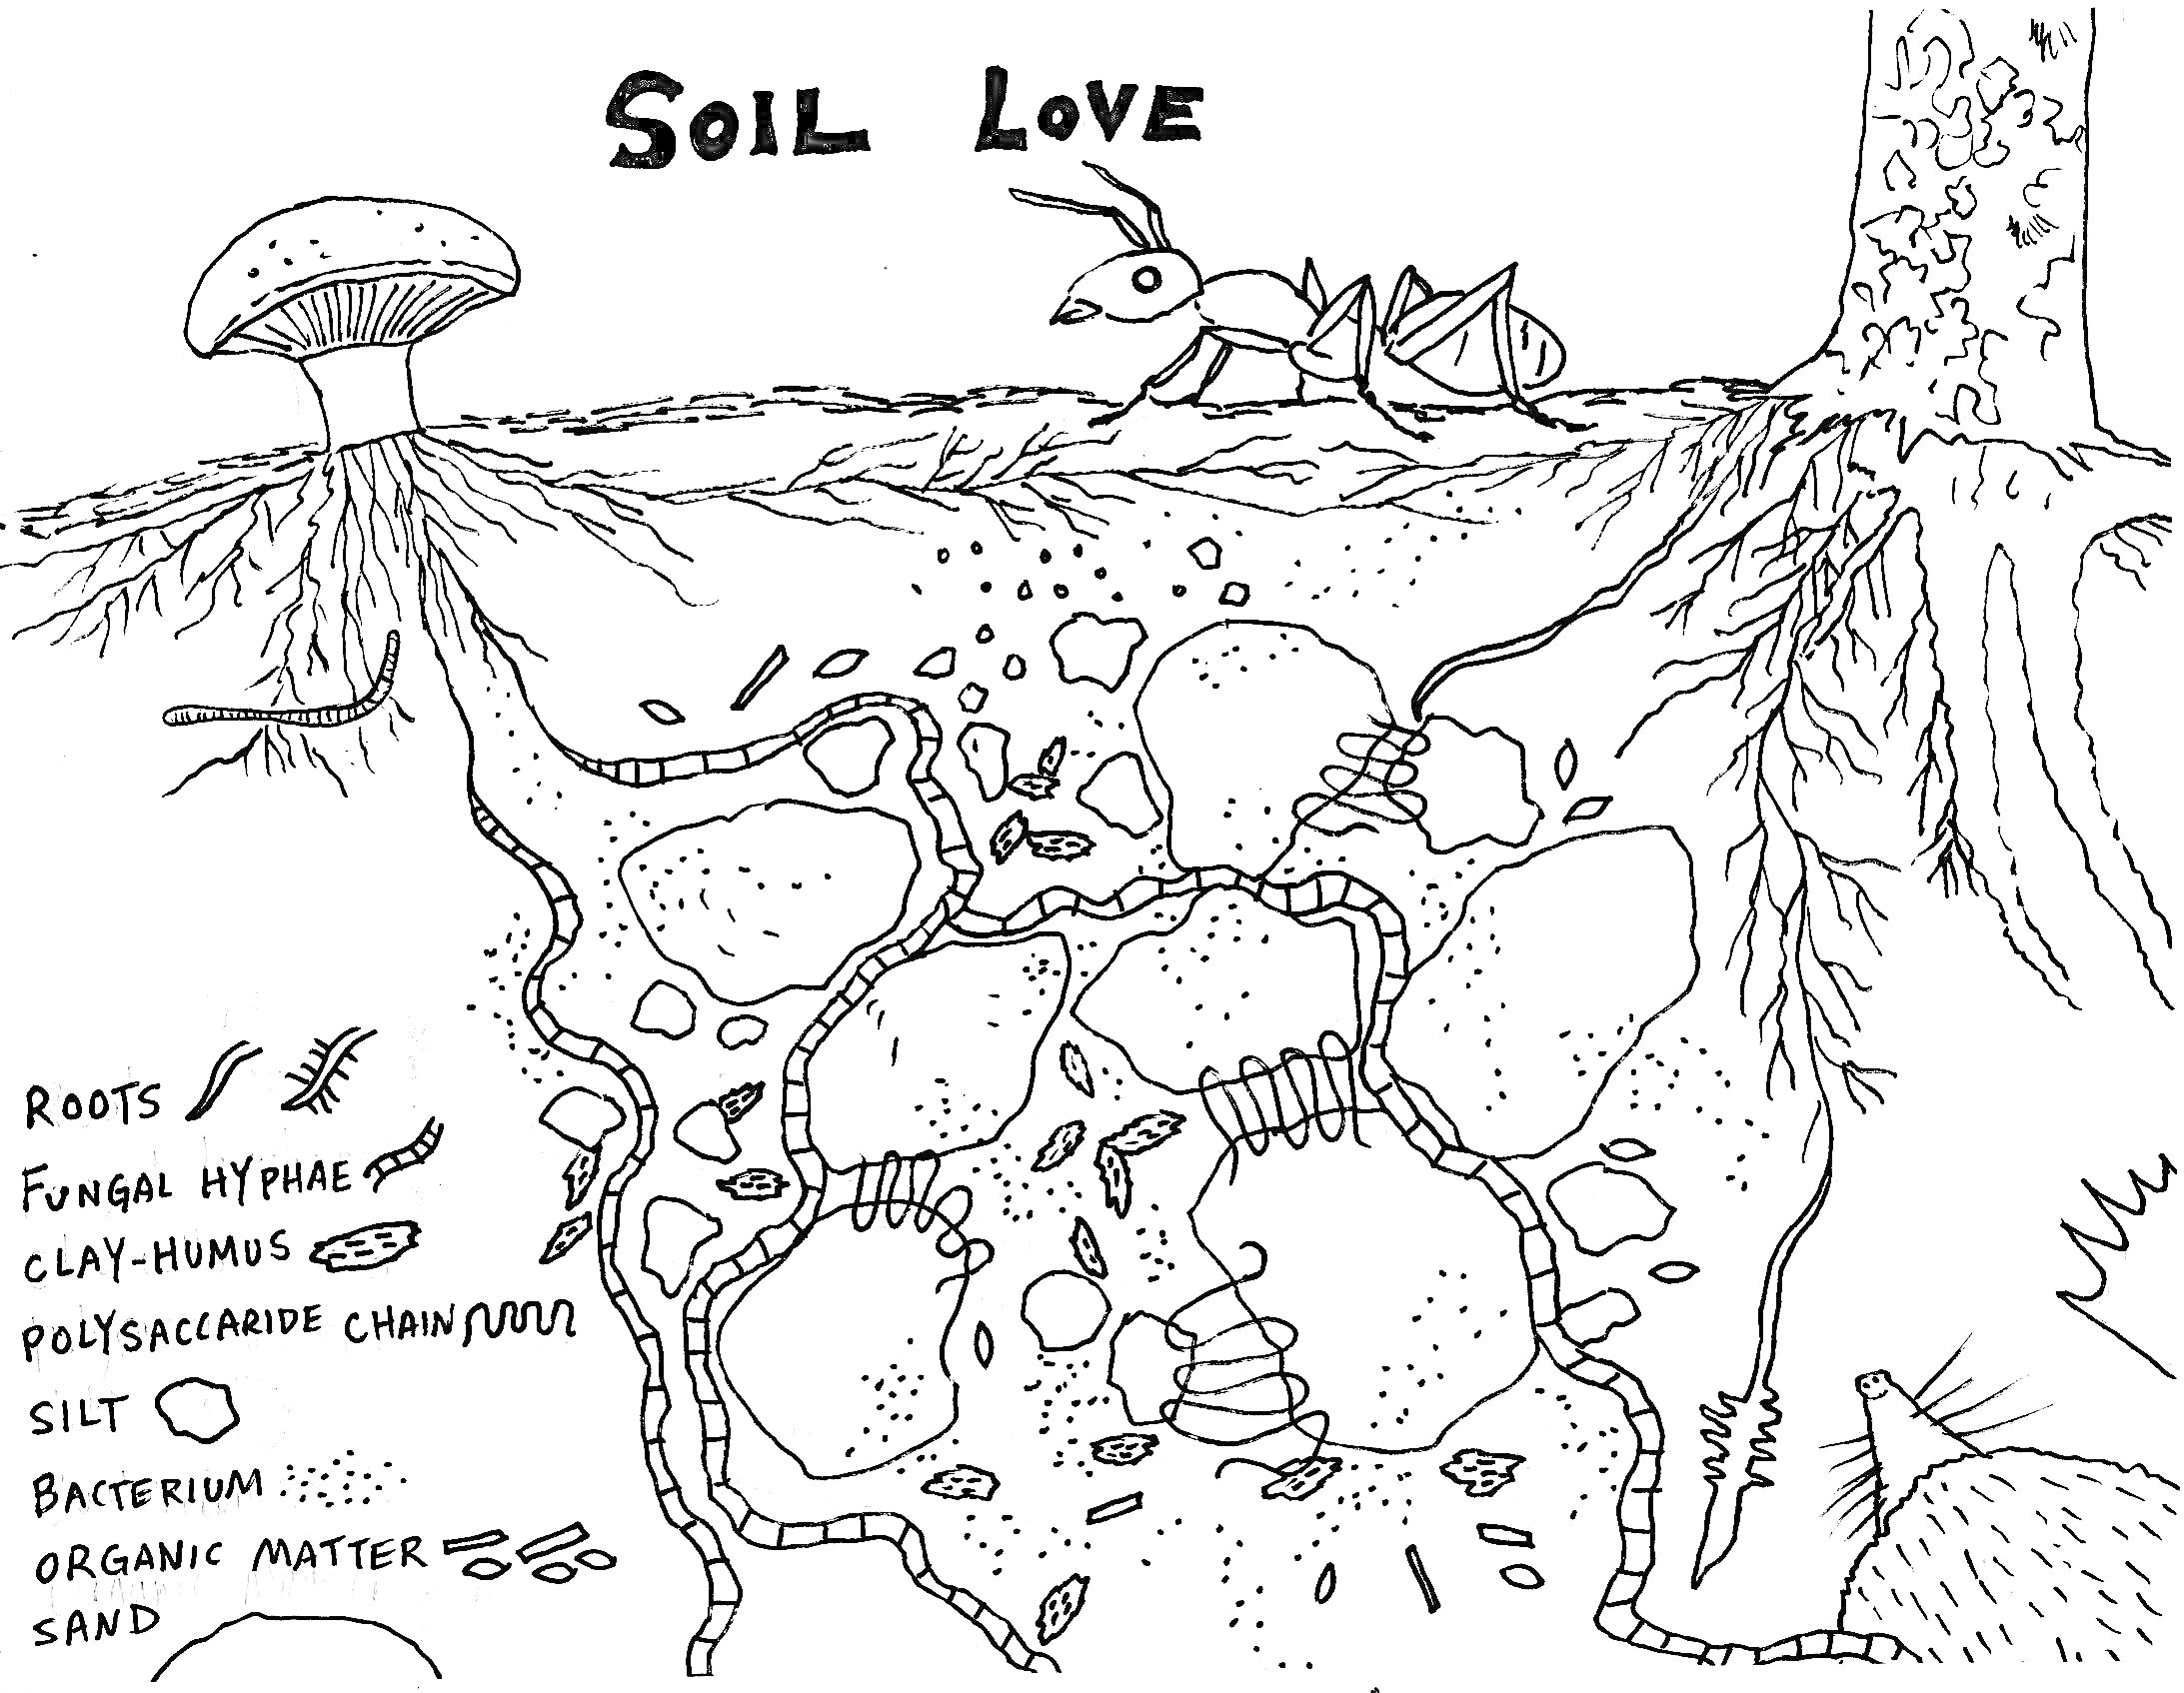 Почва. Грибы, муравей, дерево, корни, органические вещества, камни и песок